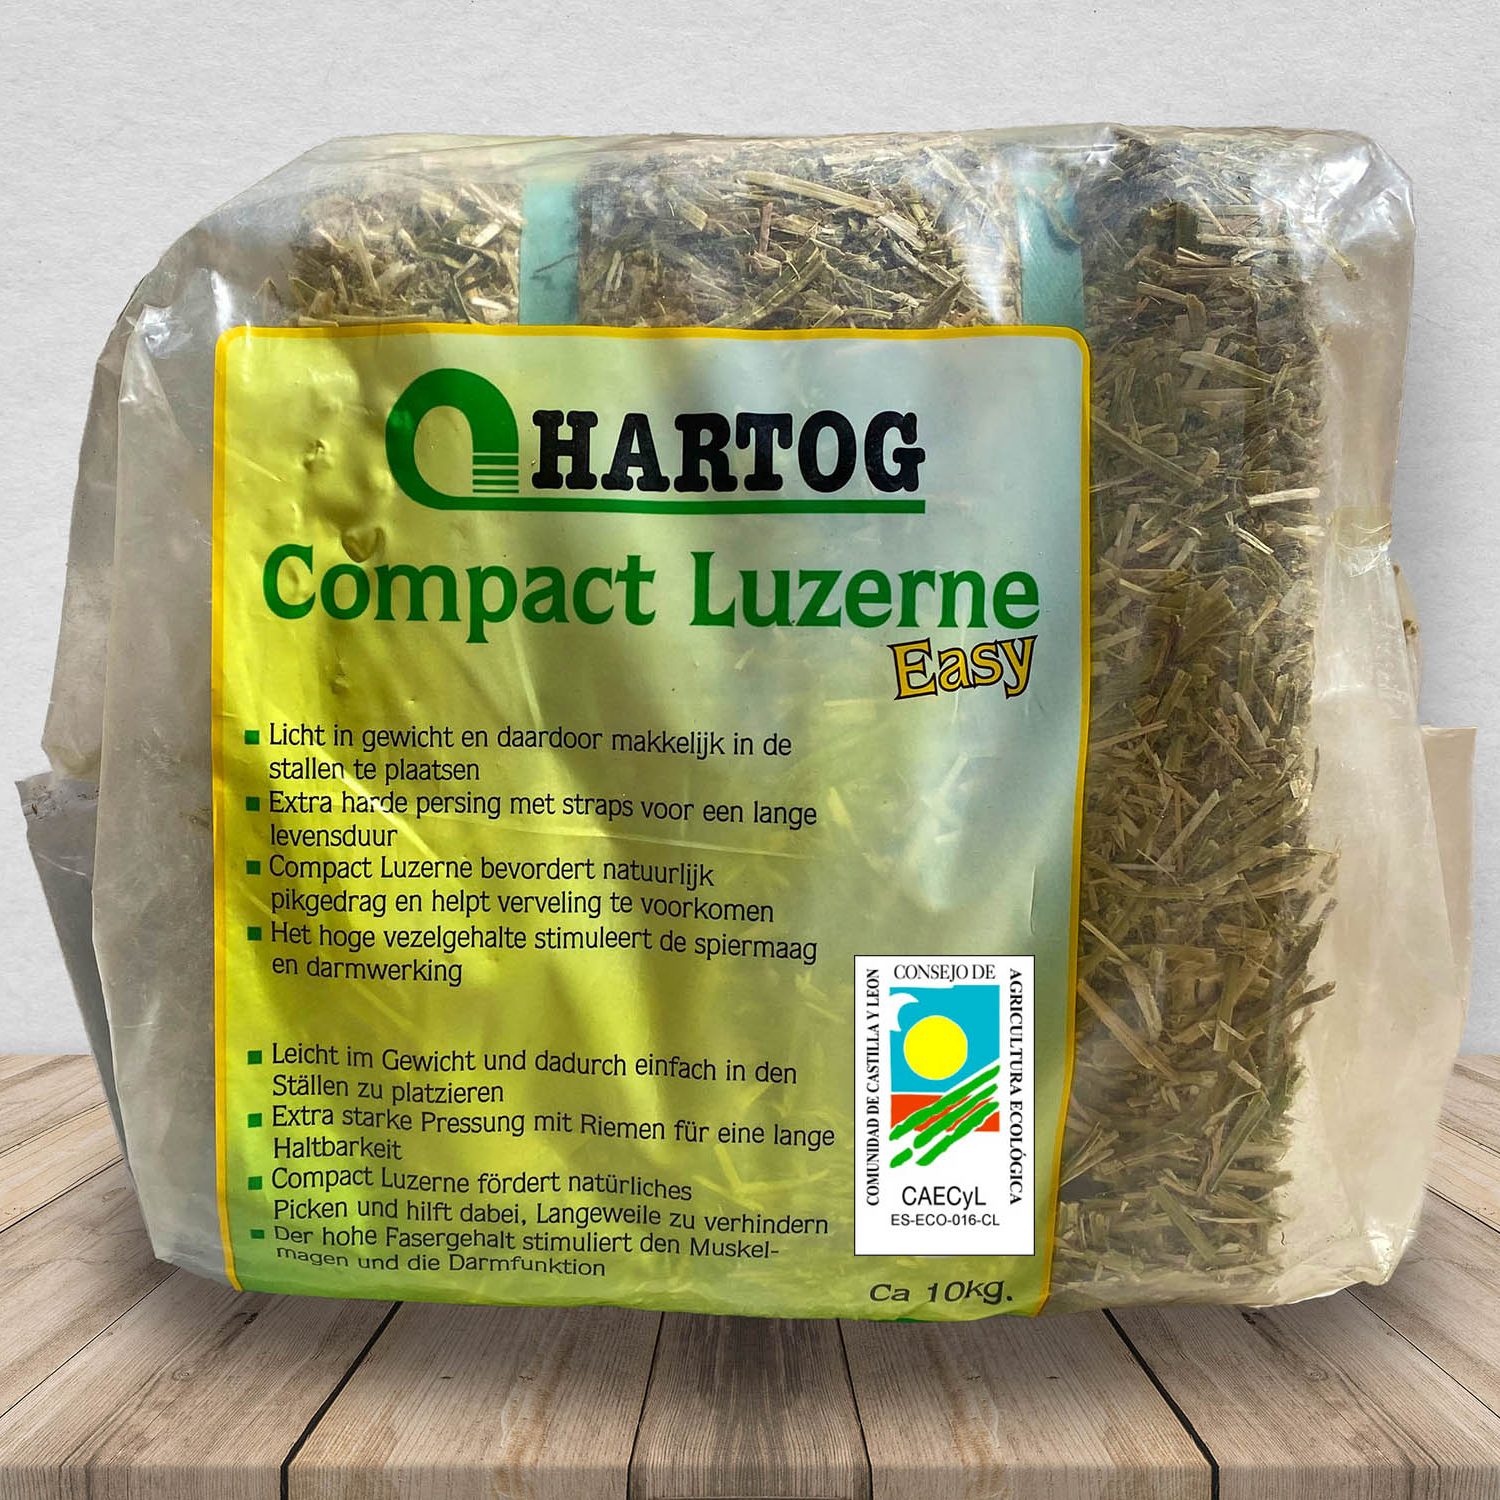 Alfalfa deshidratada a altas temperaturas 100% natural sin aditivos ni conservantes y libre de patógenos. Disponemos de Alfalfa Ecológica certificada por organismos oficiales europeos.